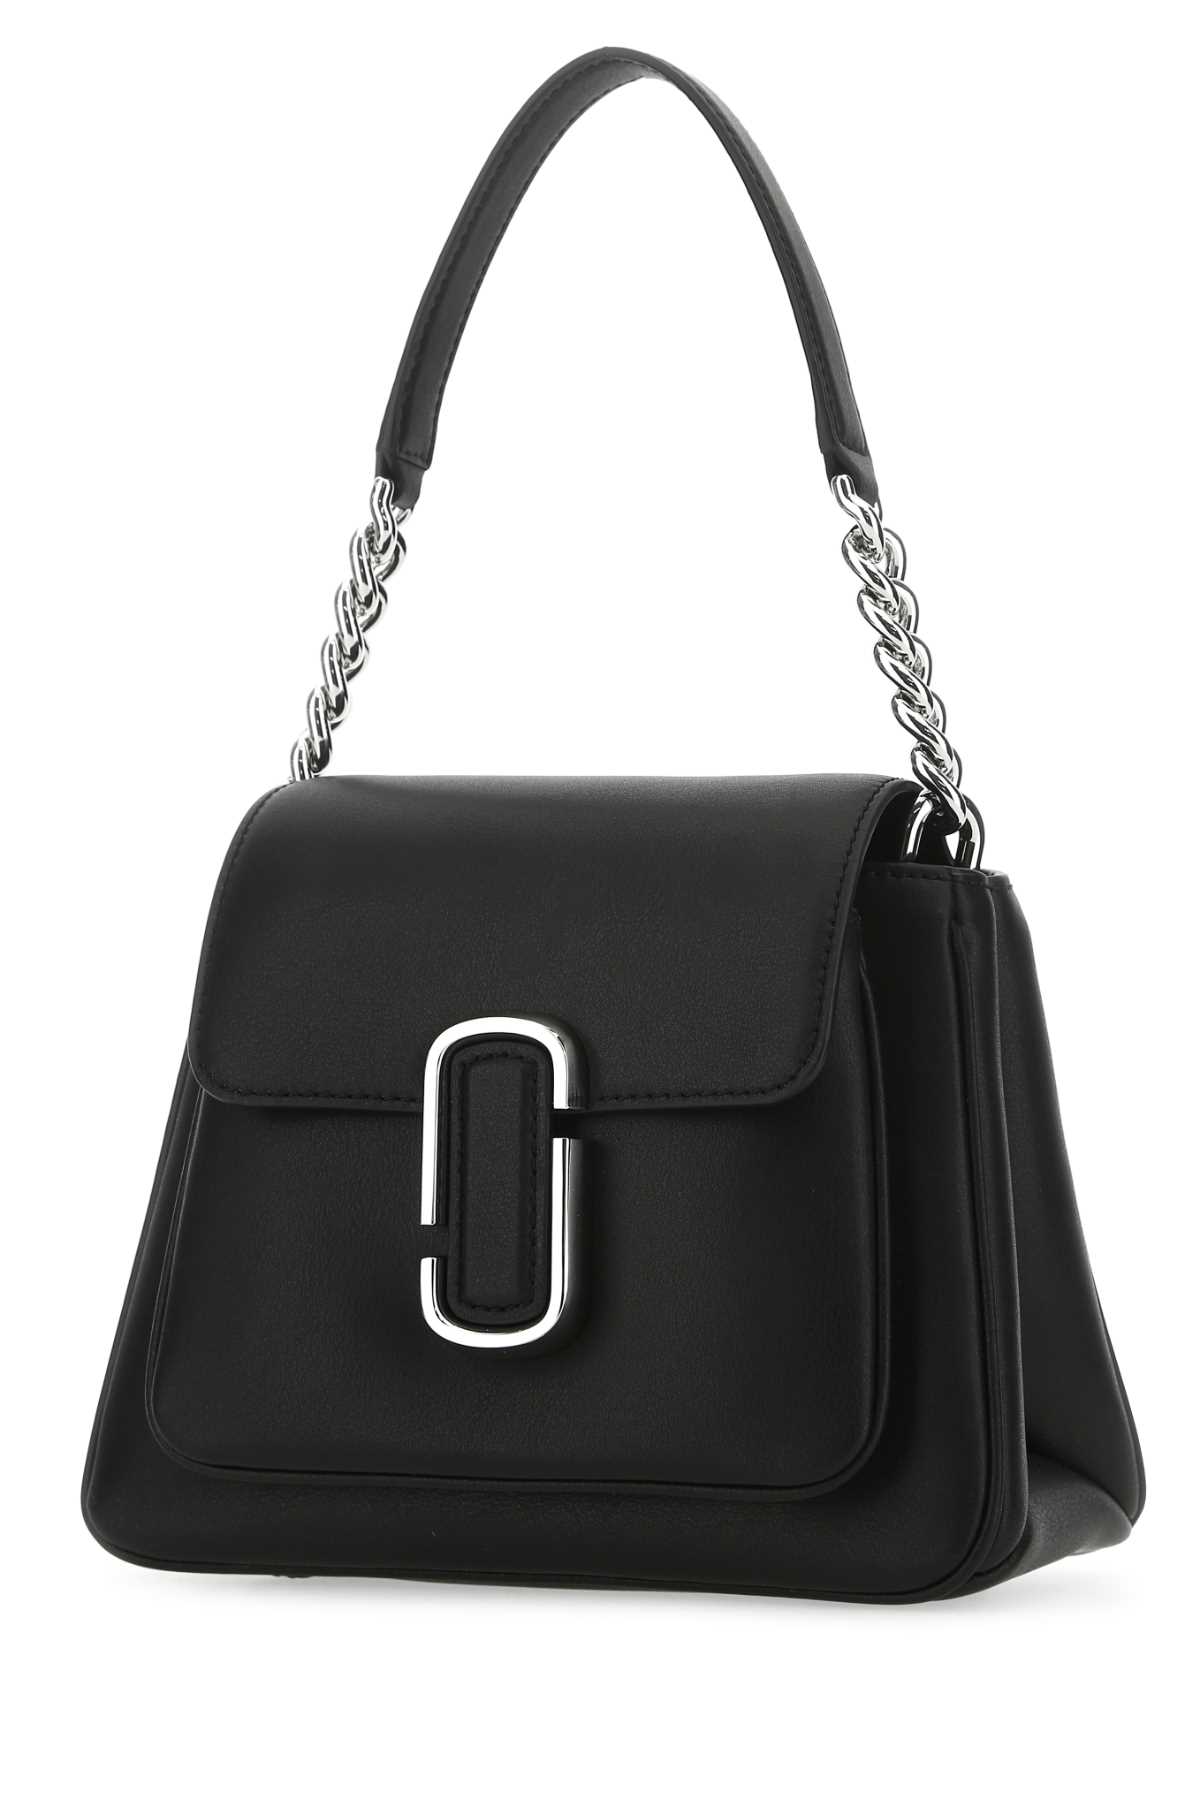 Marc Jacobs Black Leather Mini J Marc Shoulder Bag In Brown